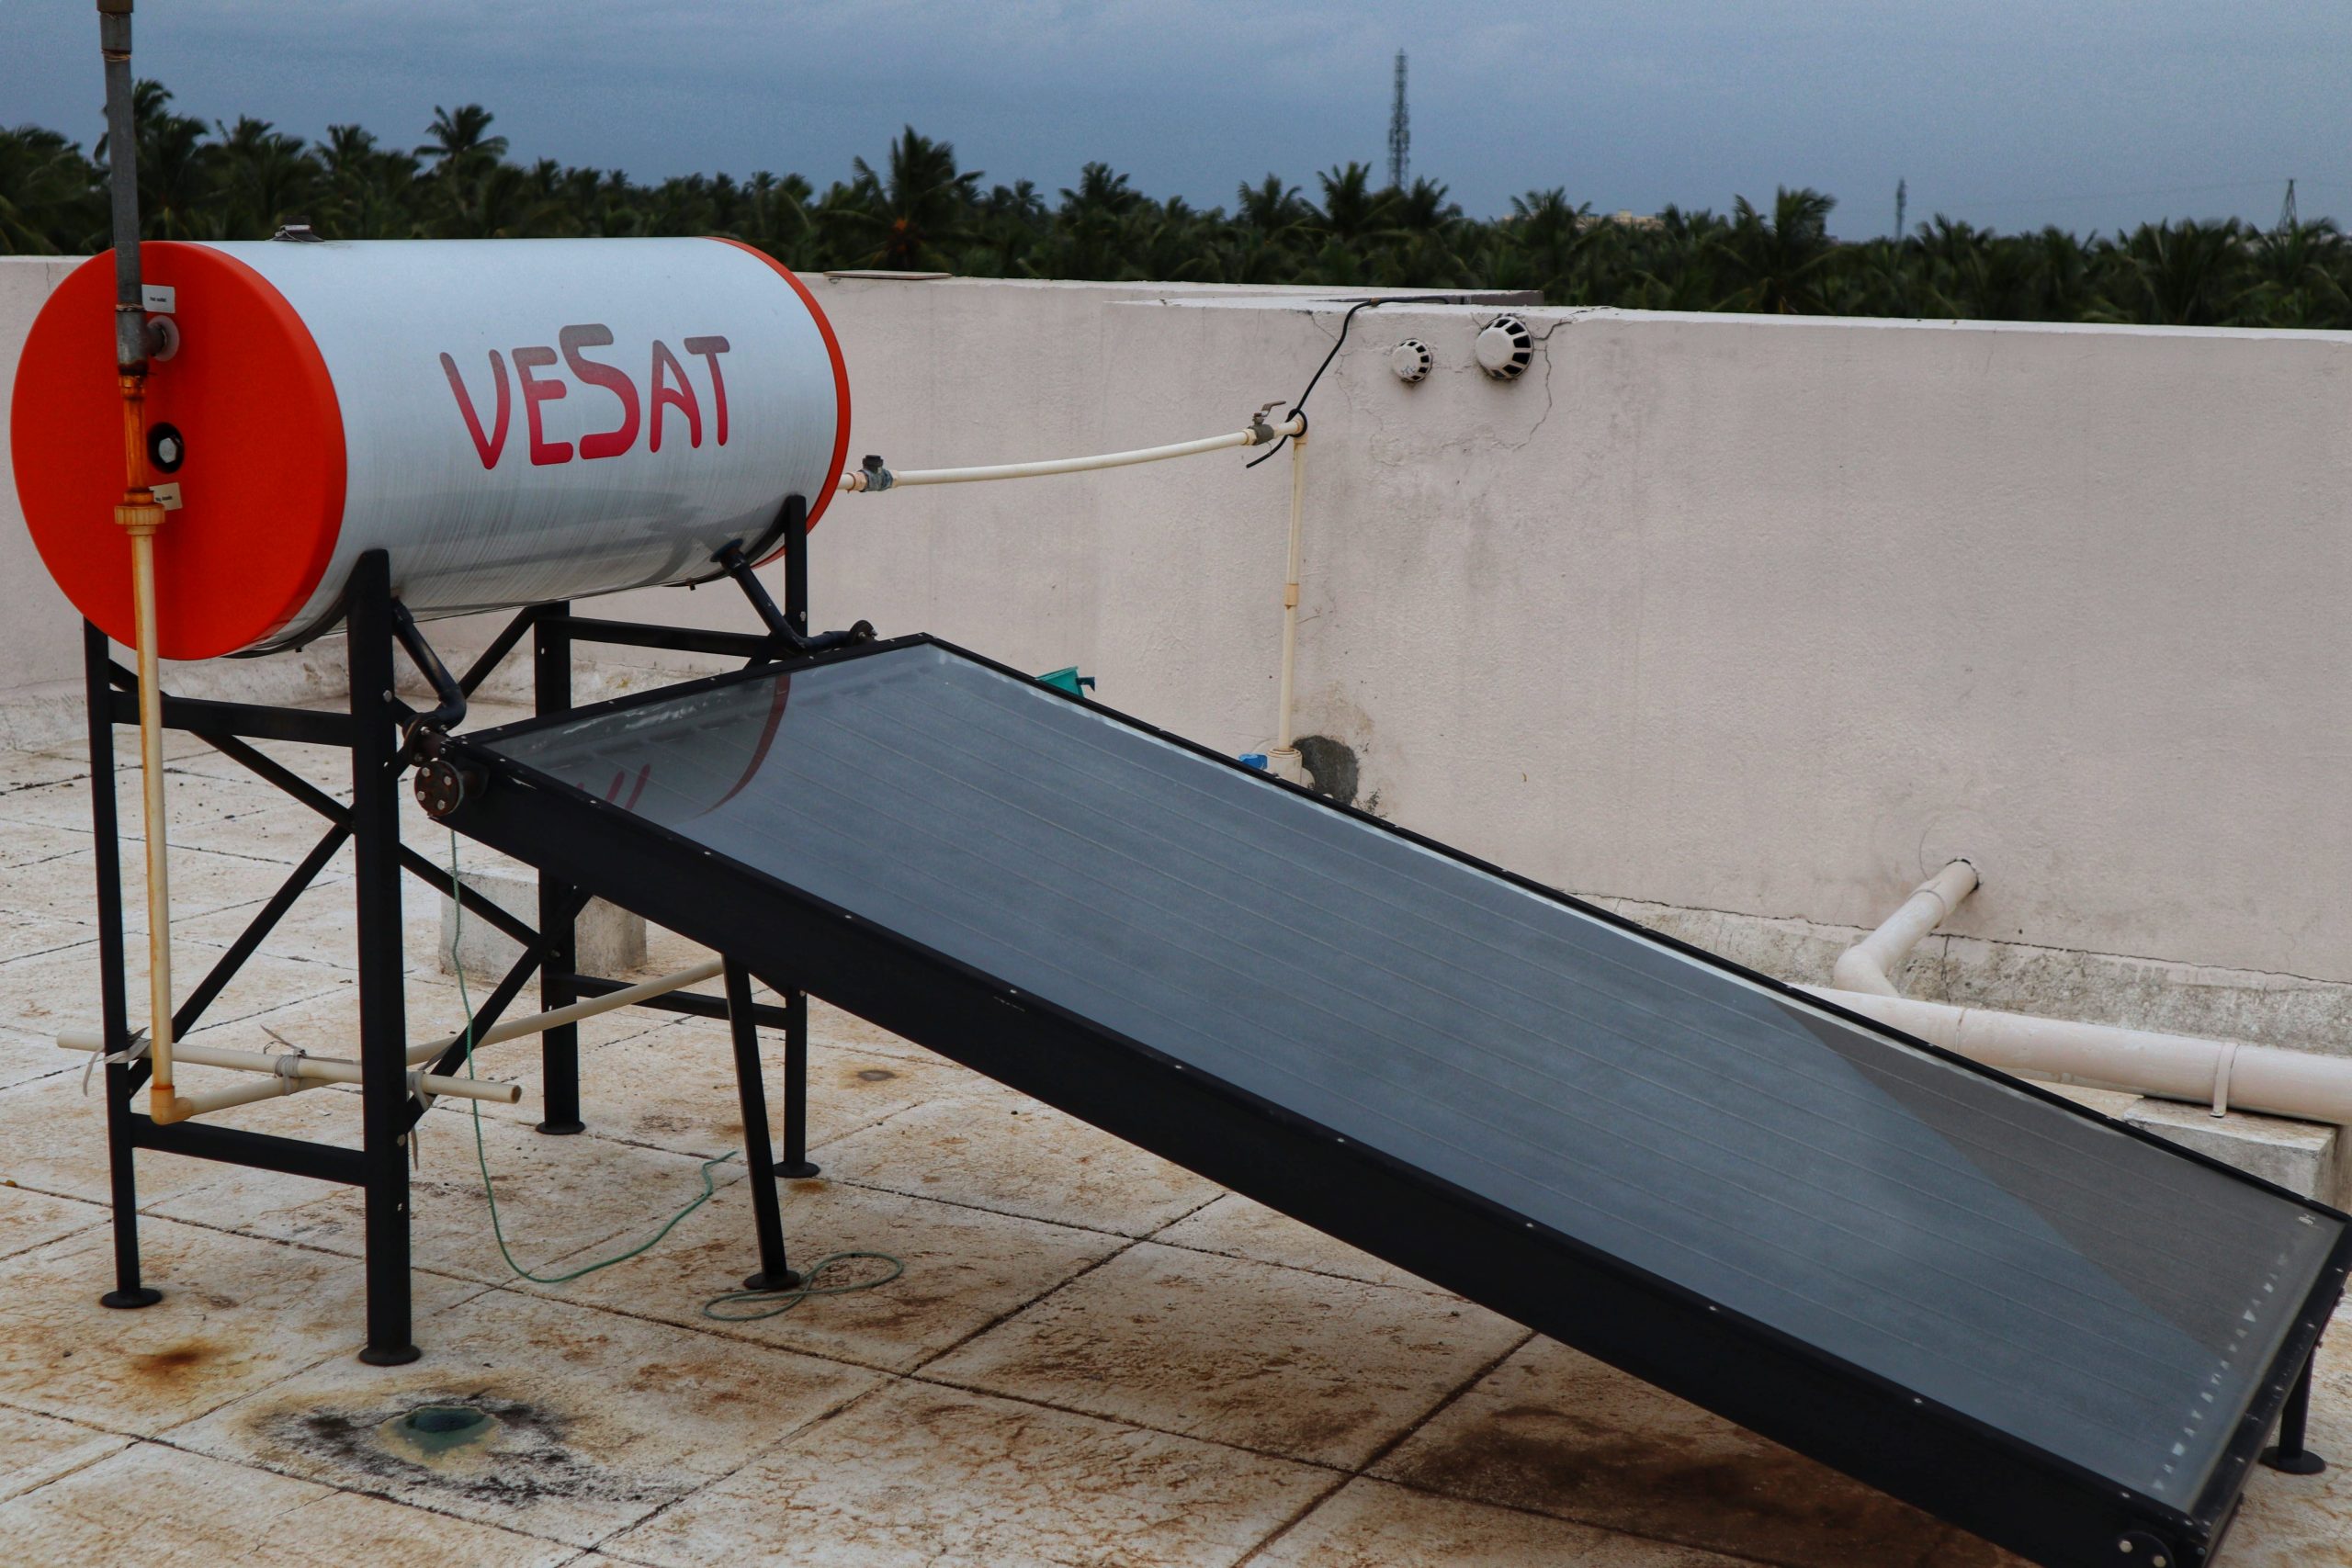 VESAT solar panel for domestic purposes